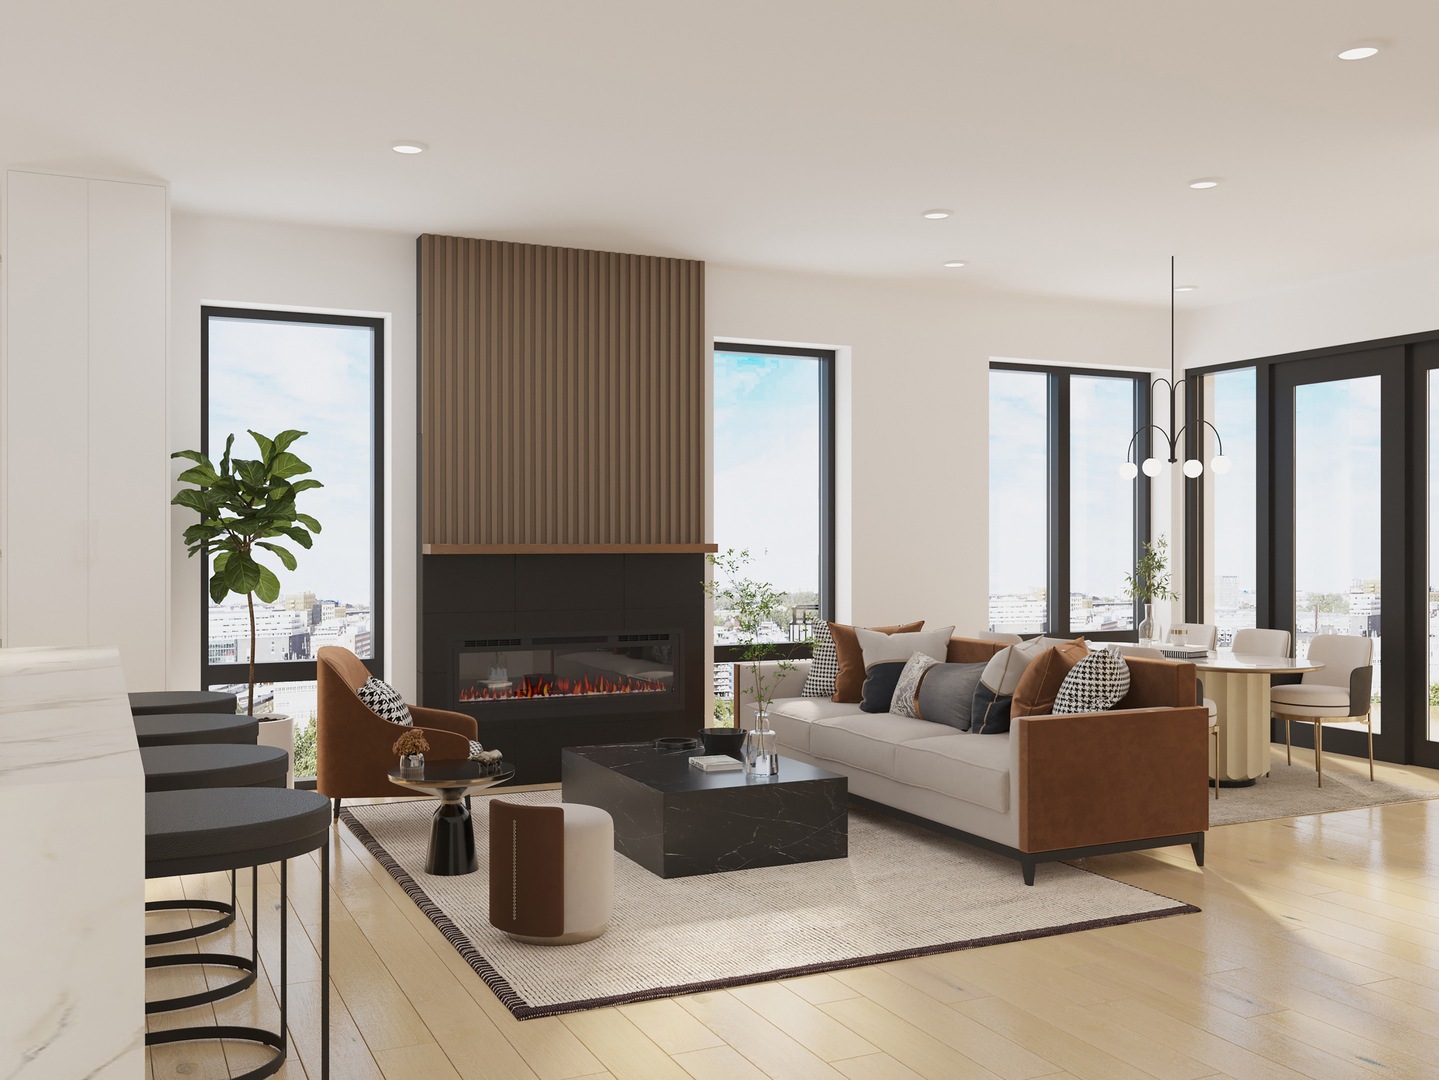 3d-interior-living-design-rendering-3-unit-new-construction-condos-chicago-illinois